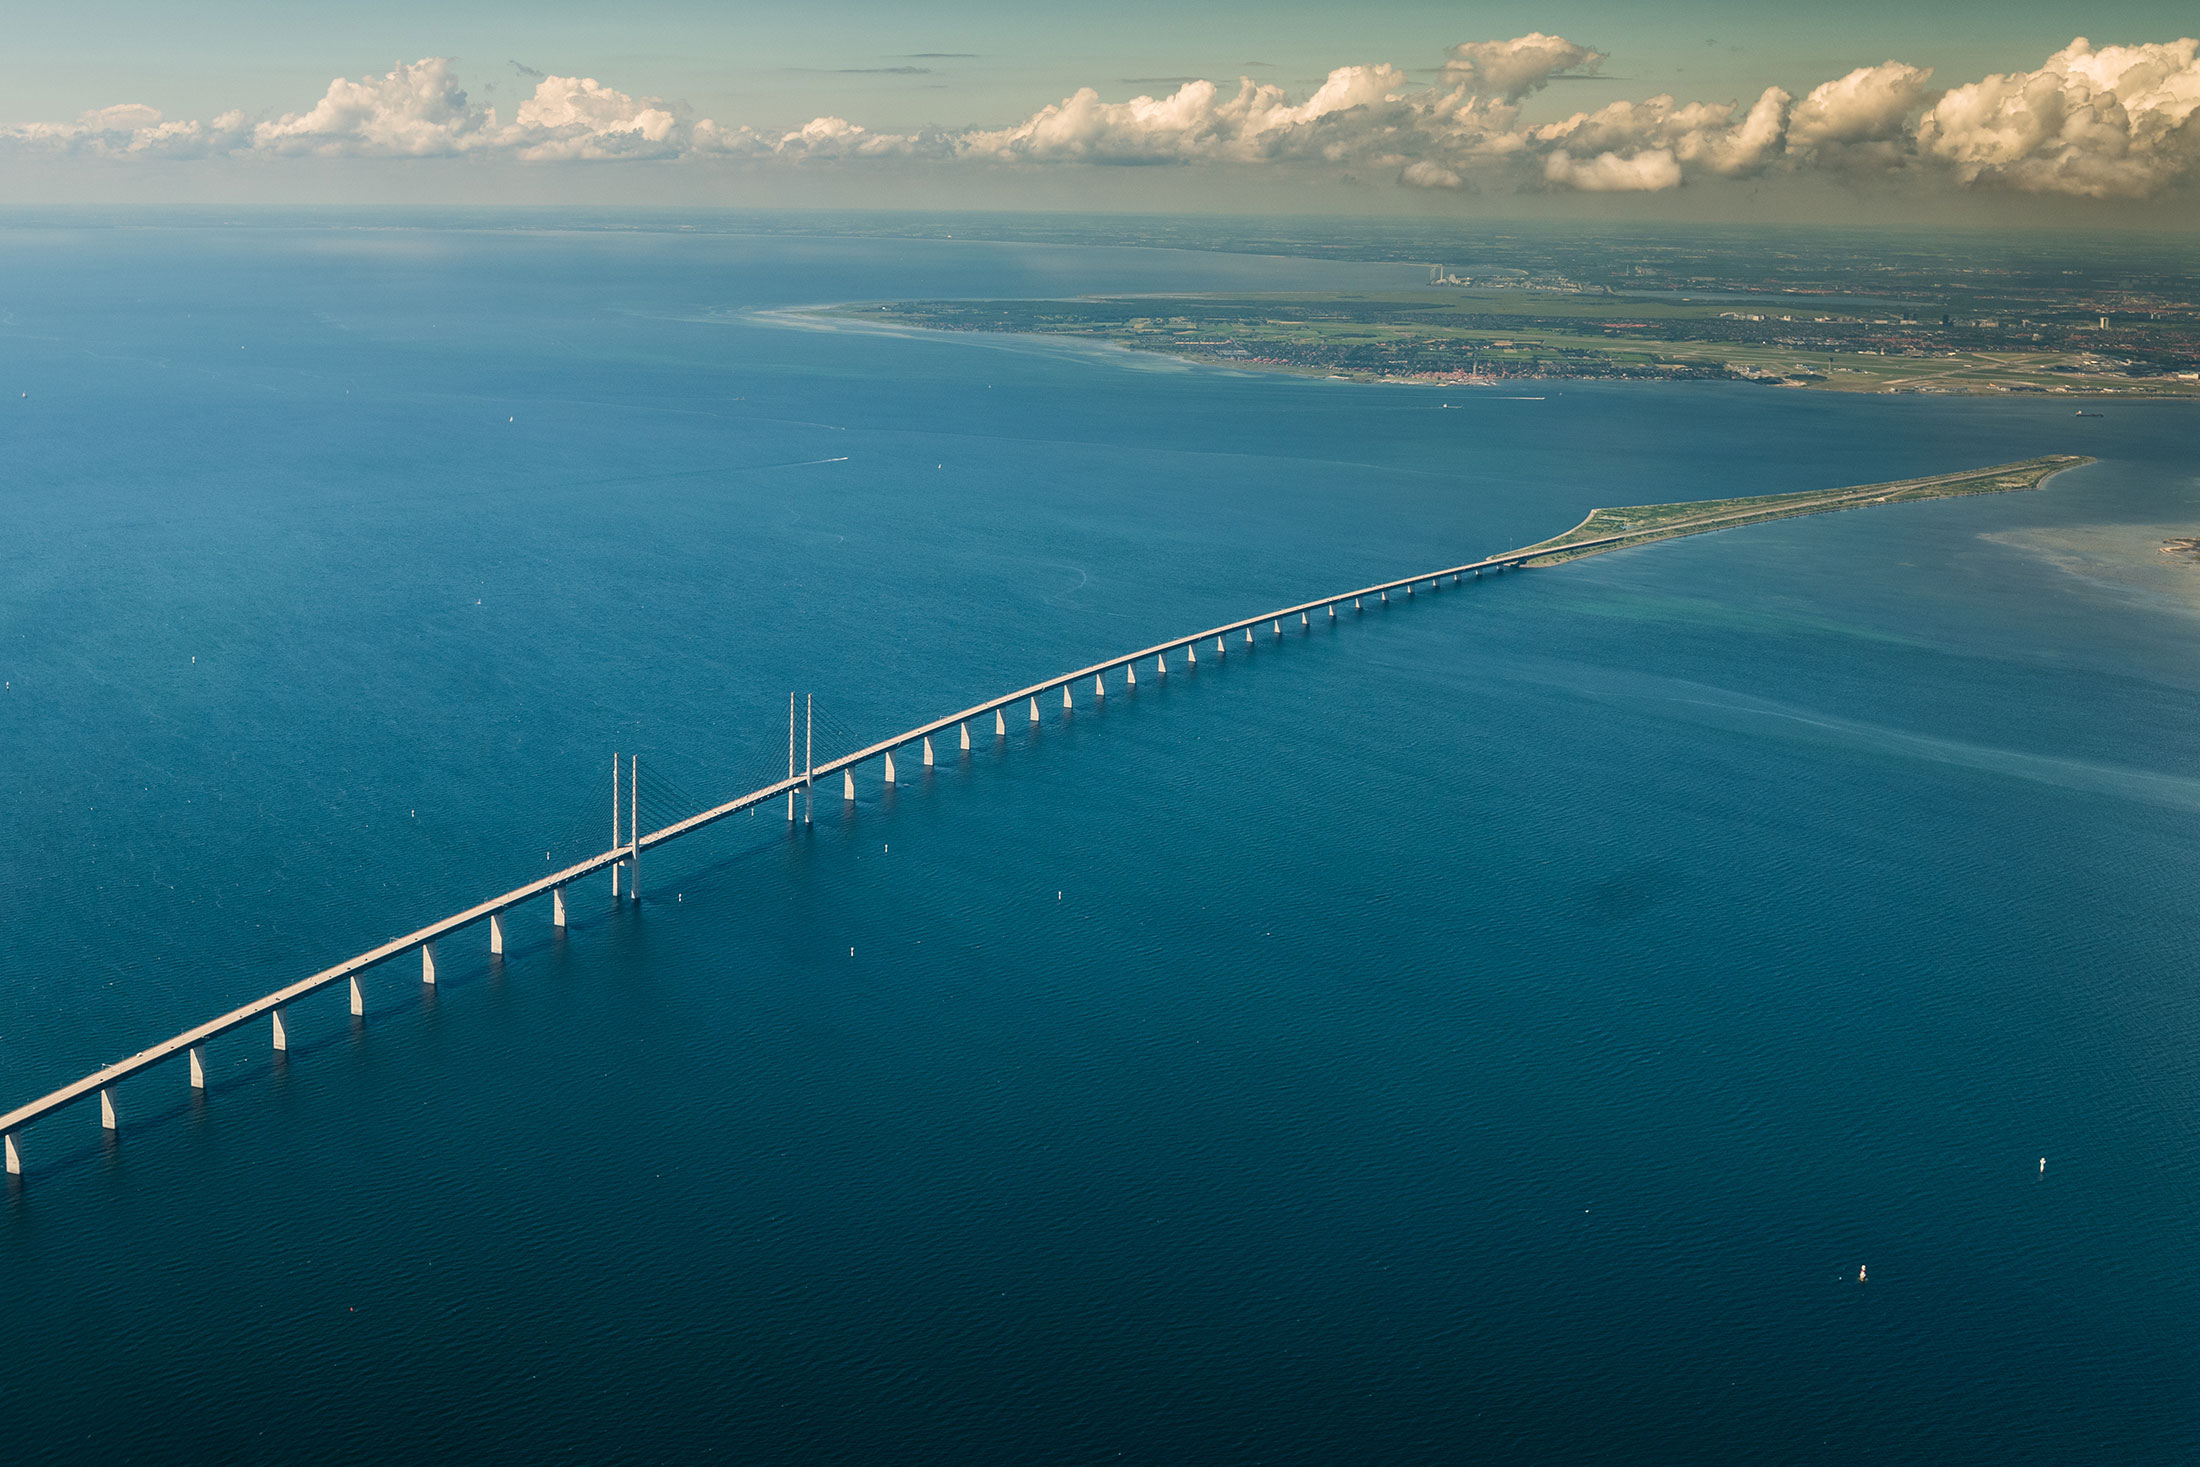 The Öresund Bridge towards Denmark.